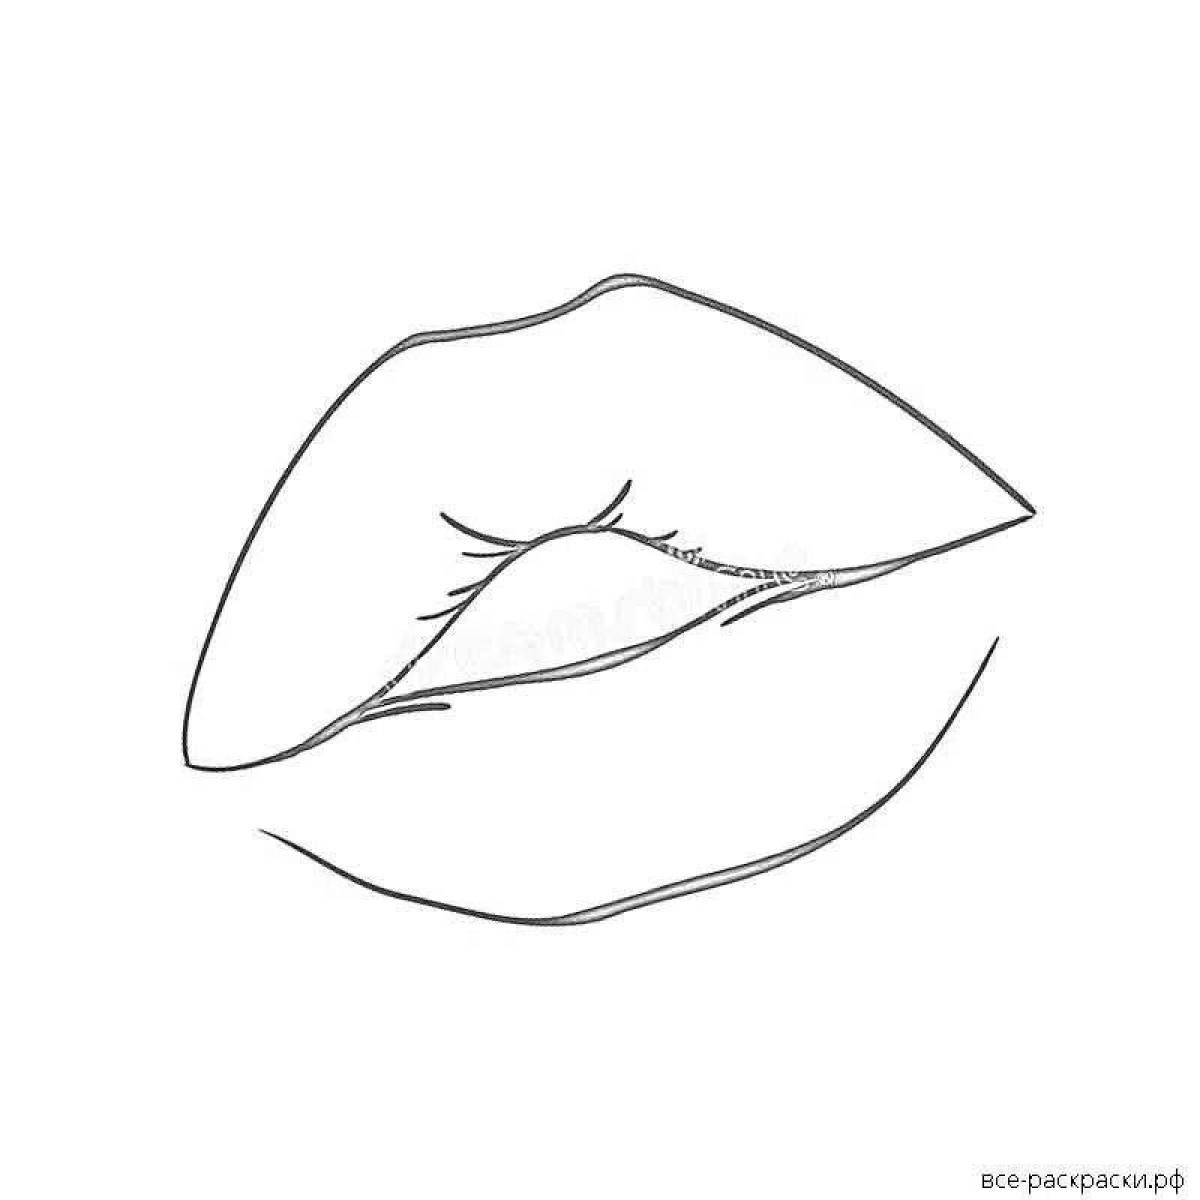 Буйный рисунок губ